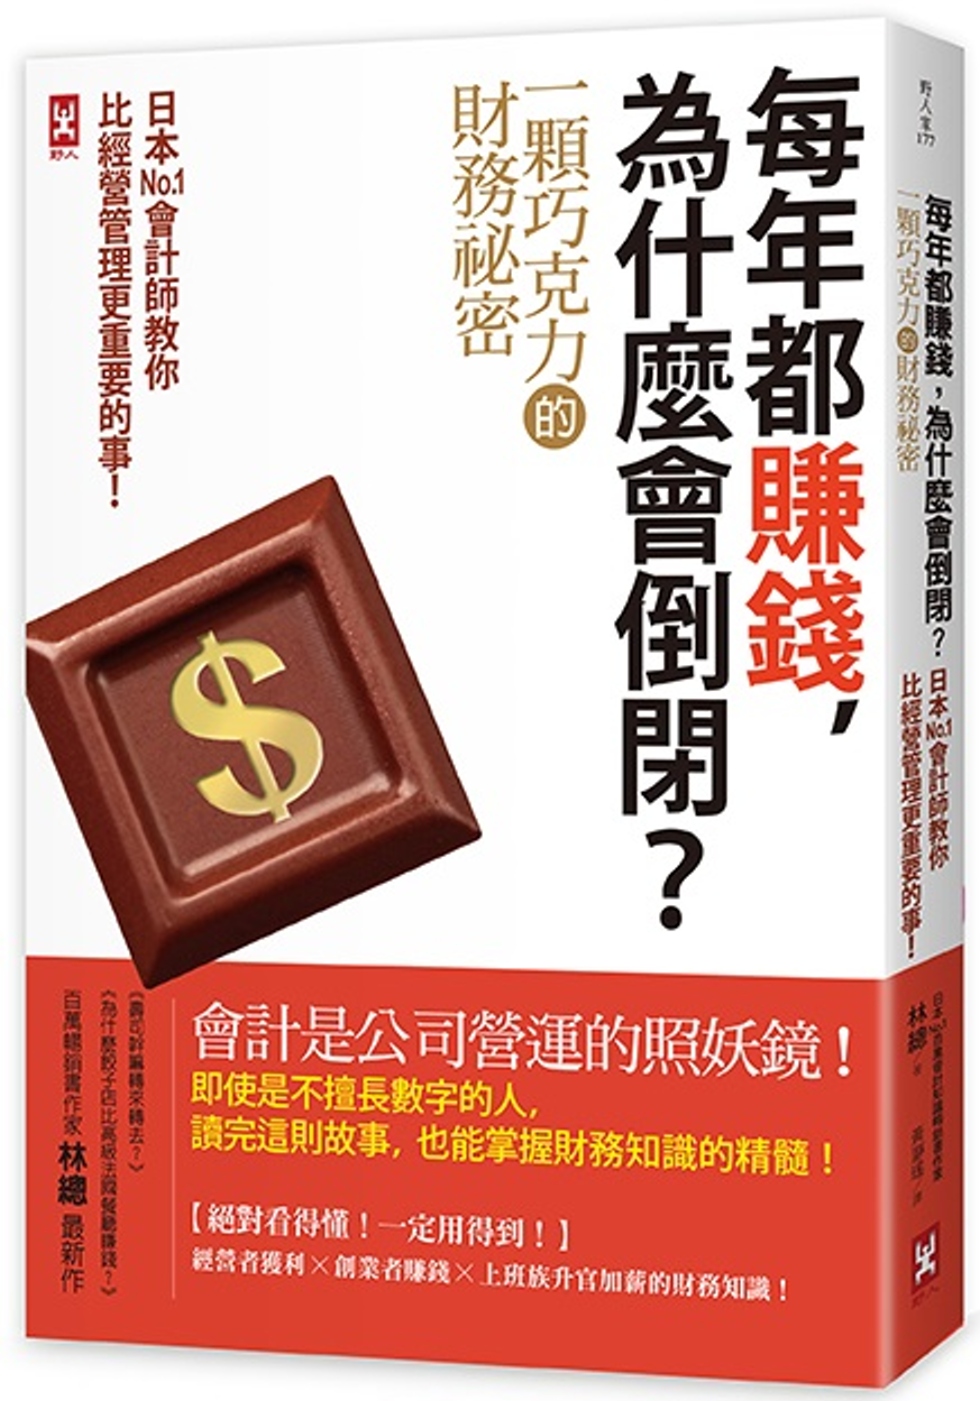 每年都賺錢，為什麼會倒閉？〔一顆巧克力的財務祕密〕日本No....